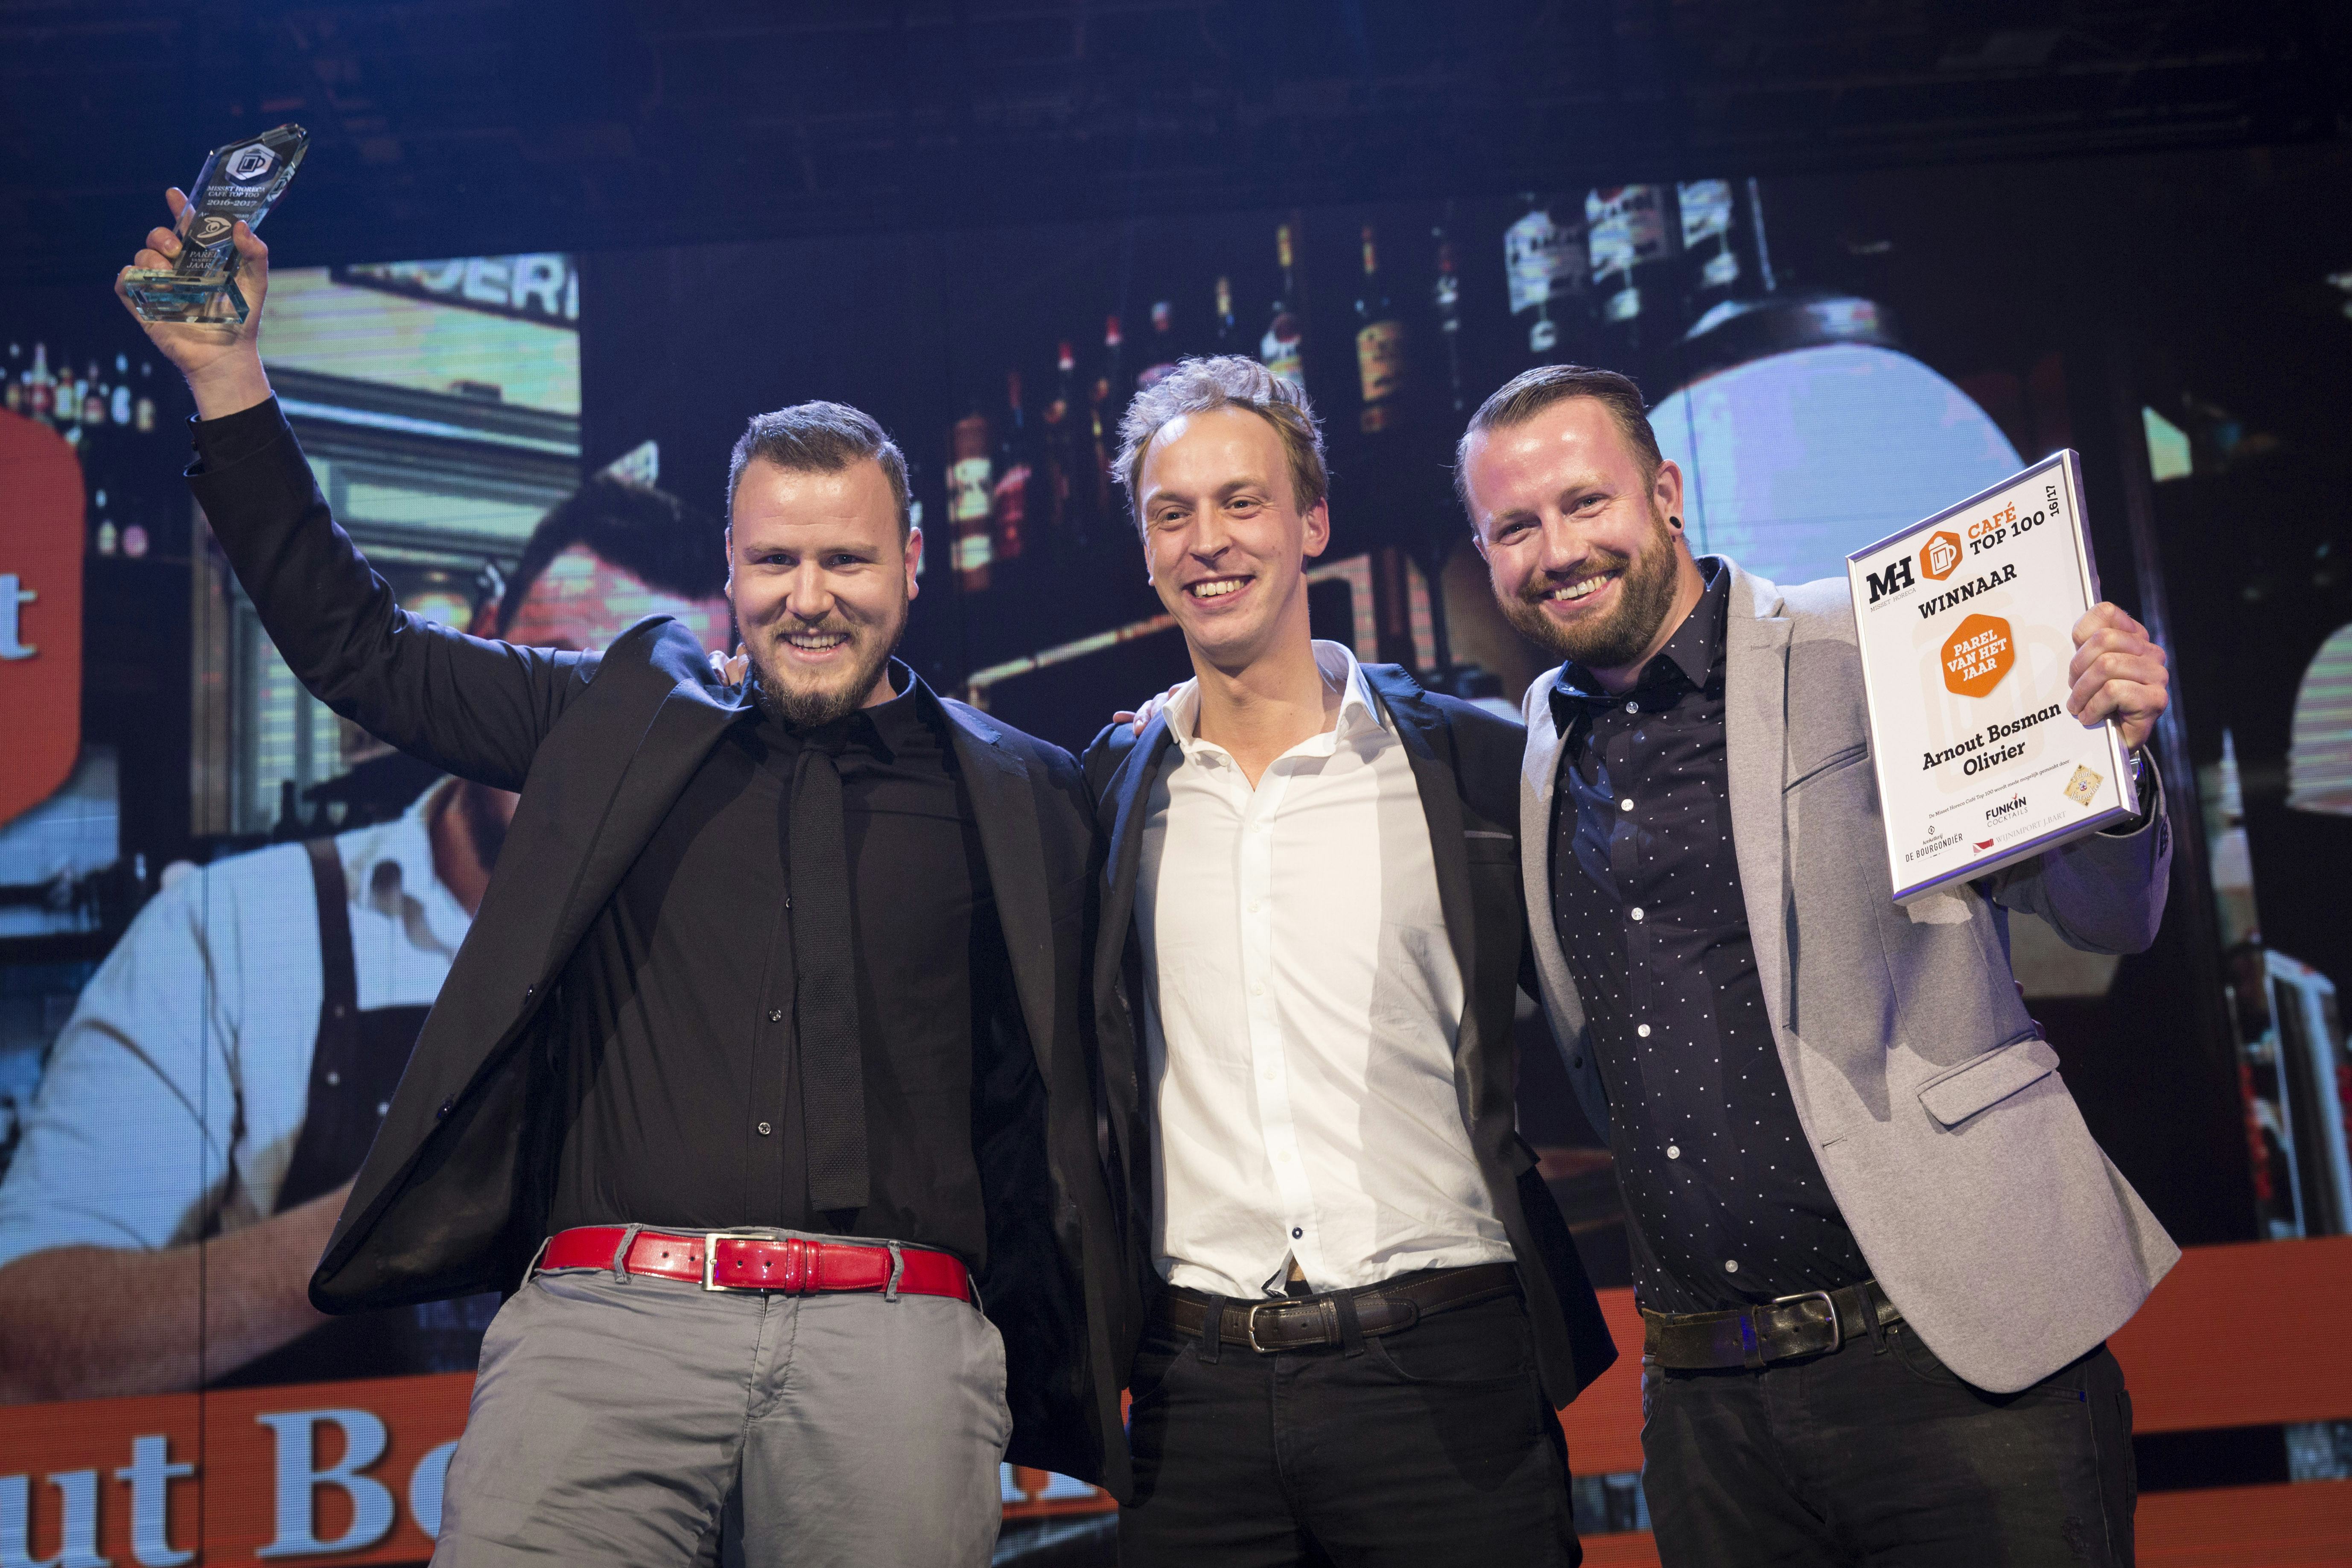 Vlnr: Arnout Bosman, Jacob Andela en bedrijfsleider Johan Schmit. Foto: Koos Groenewold.